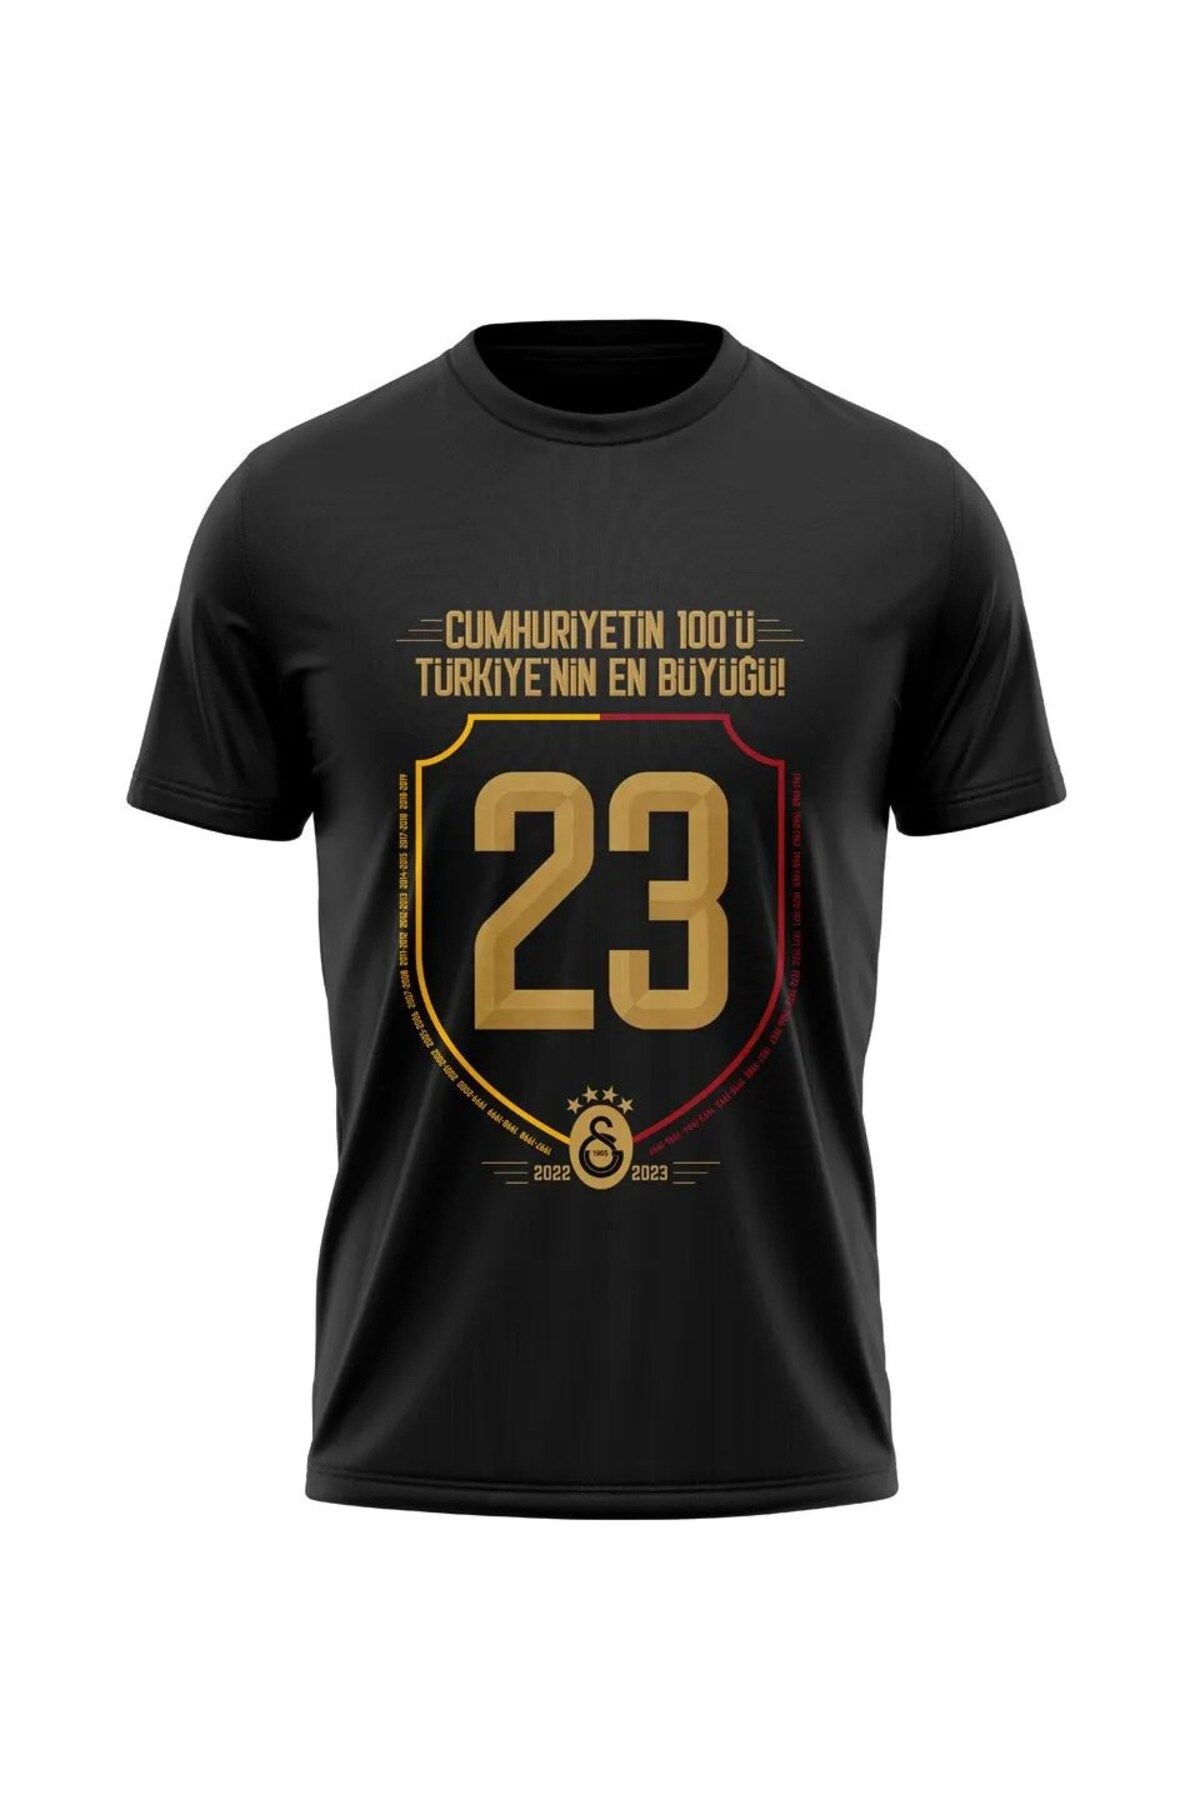 Galatasaray Lisanslı 2023 Şampiyonluk Çocuk T-Shirt